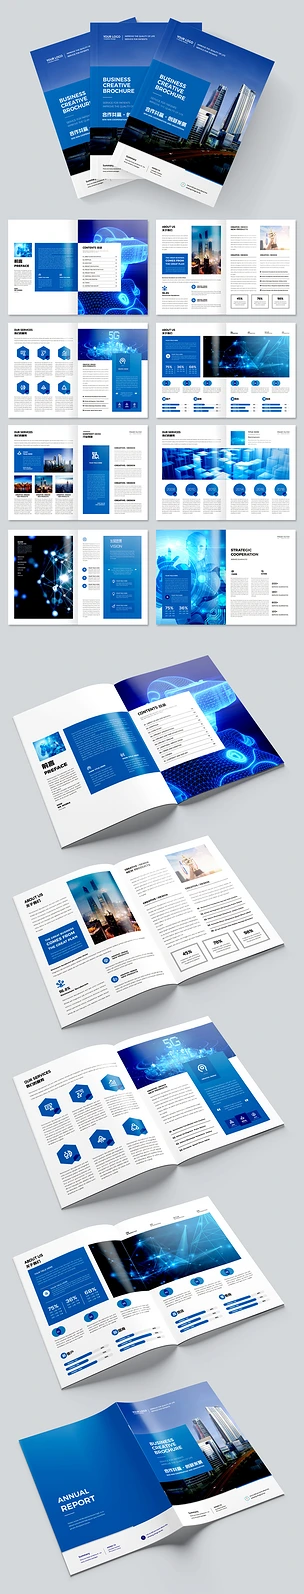 大气蓝色科技画册宣传册企业画册设计模板